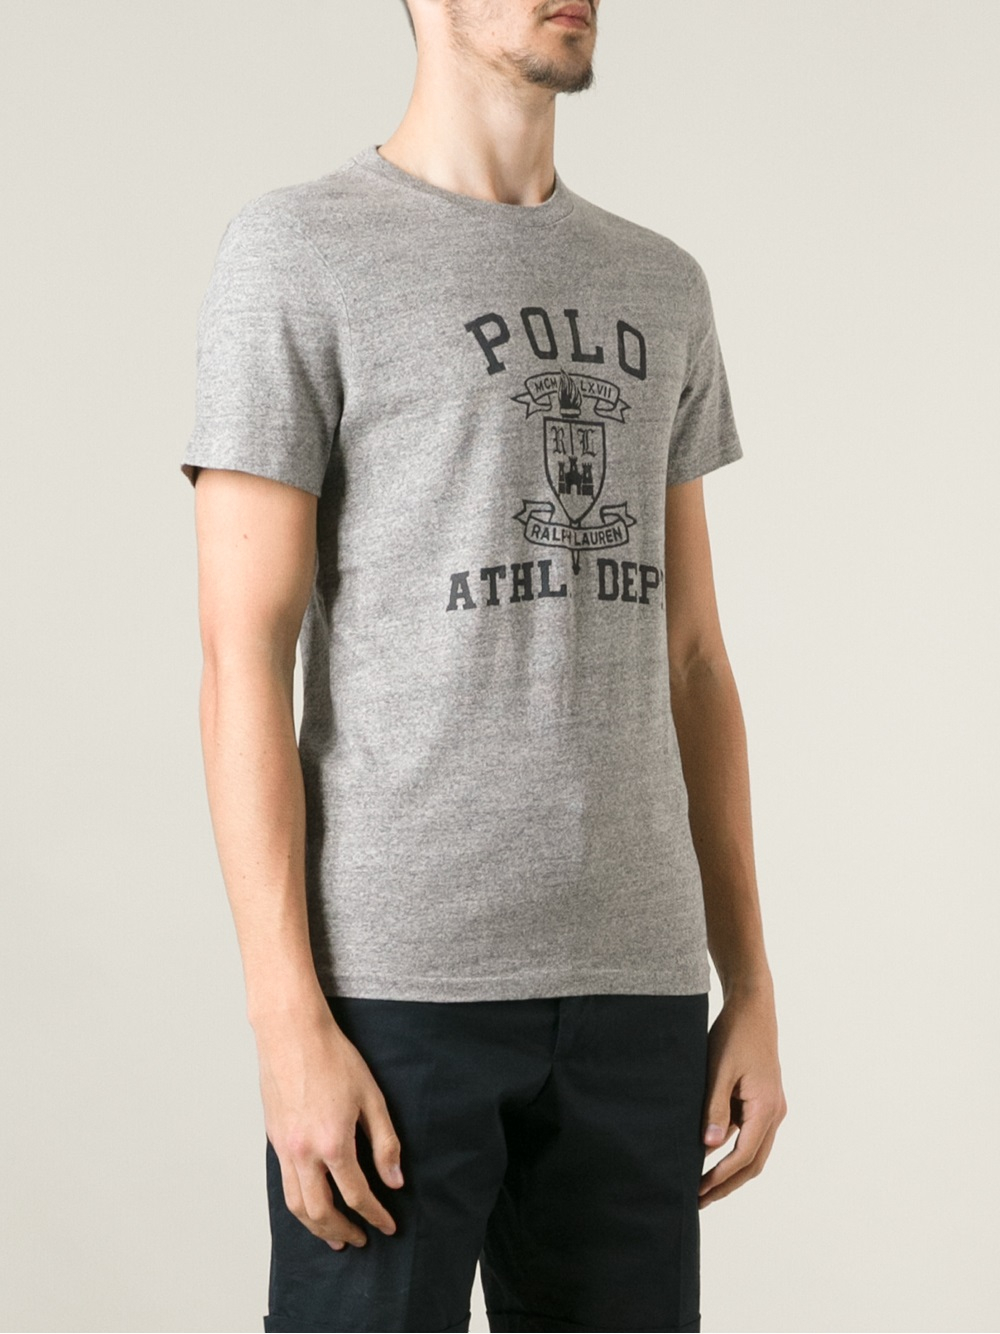 Samui long polo ralph lauren t shirt print online where gta